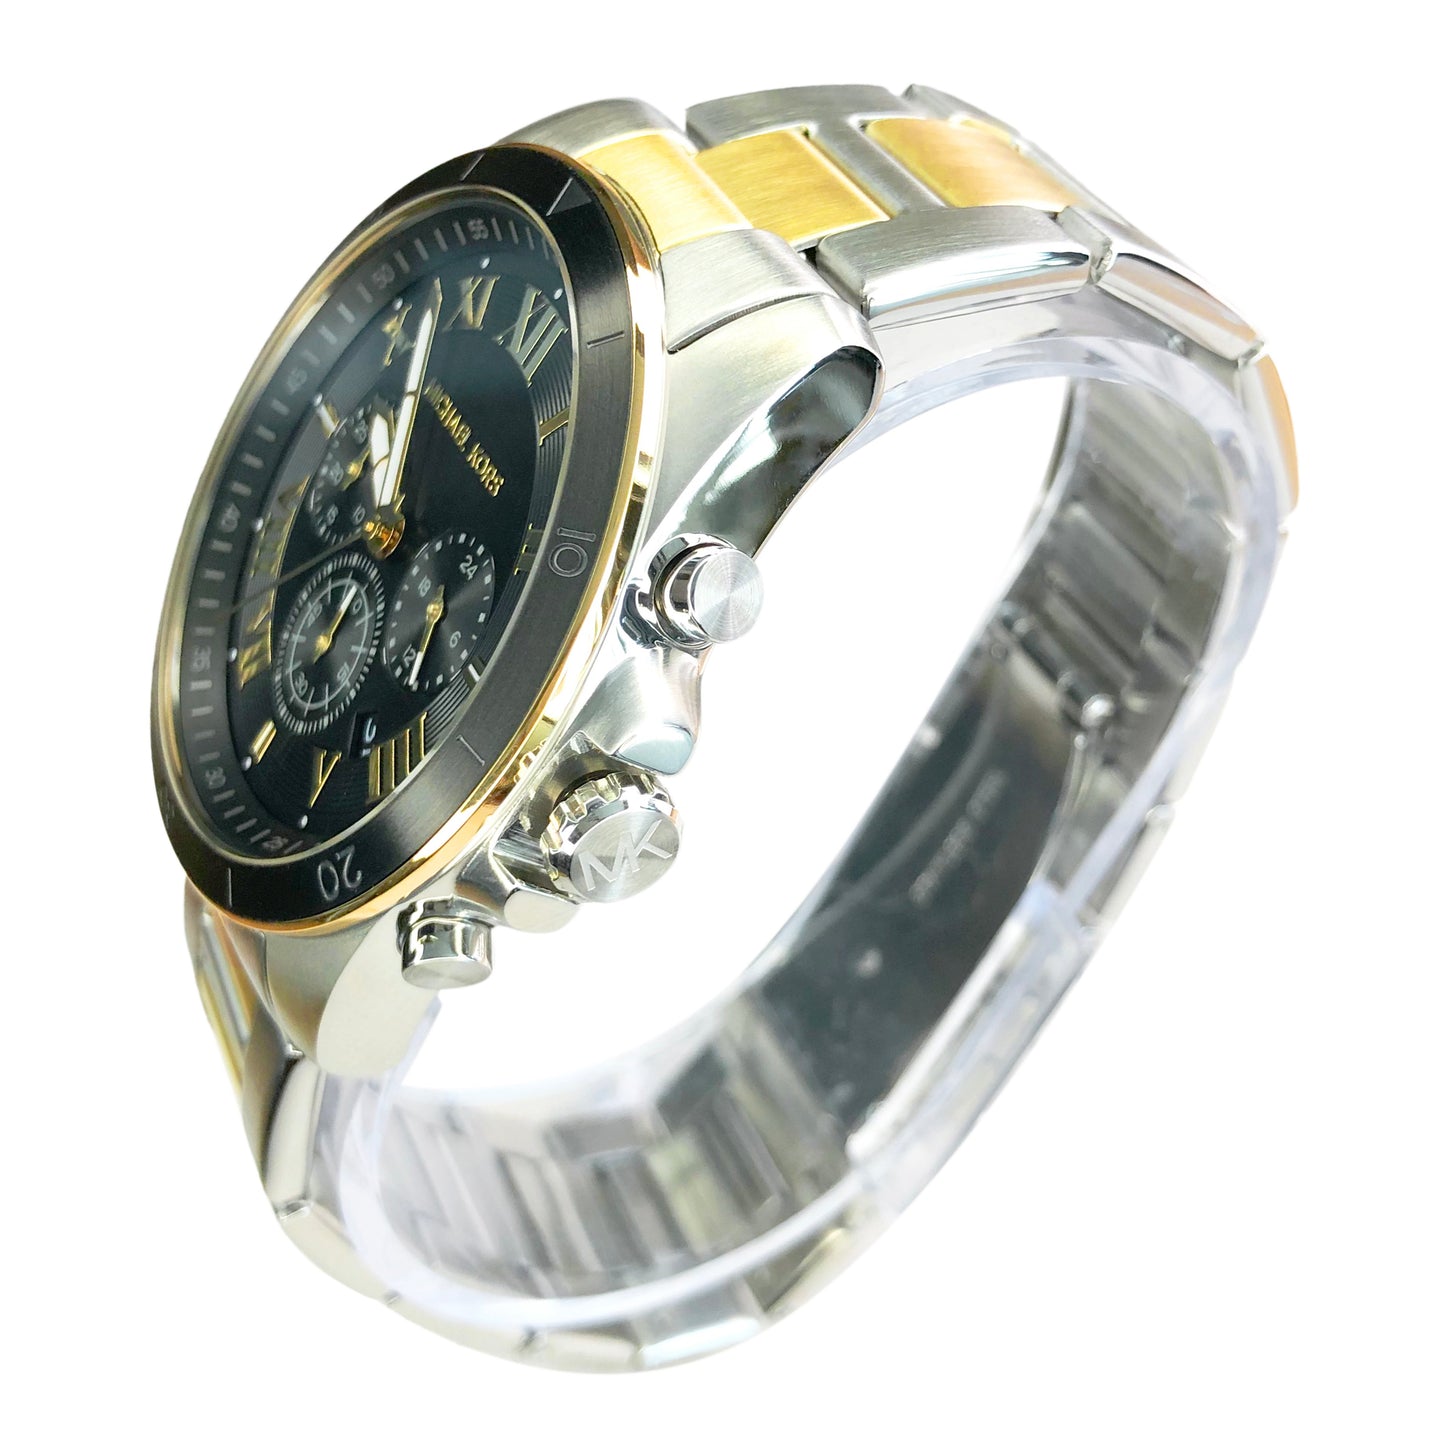 Michael Kors Alek Two Tone Chronograph Men's Watch MK8901